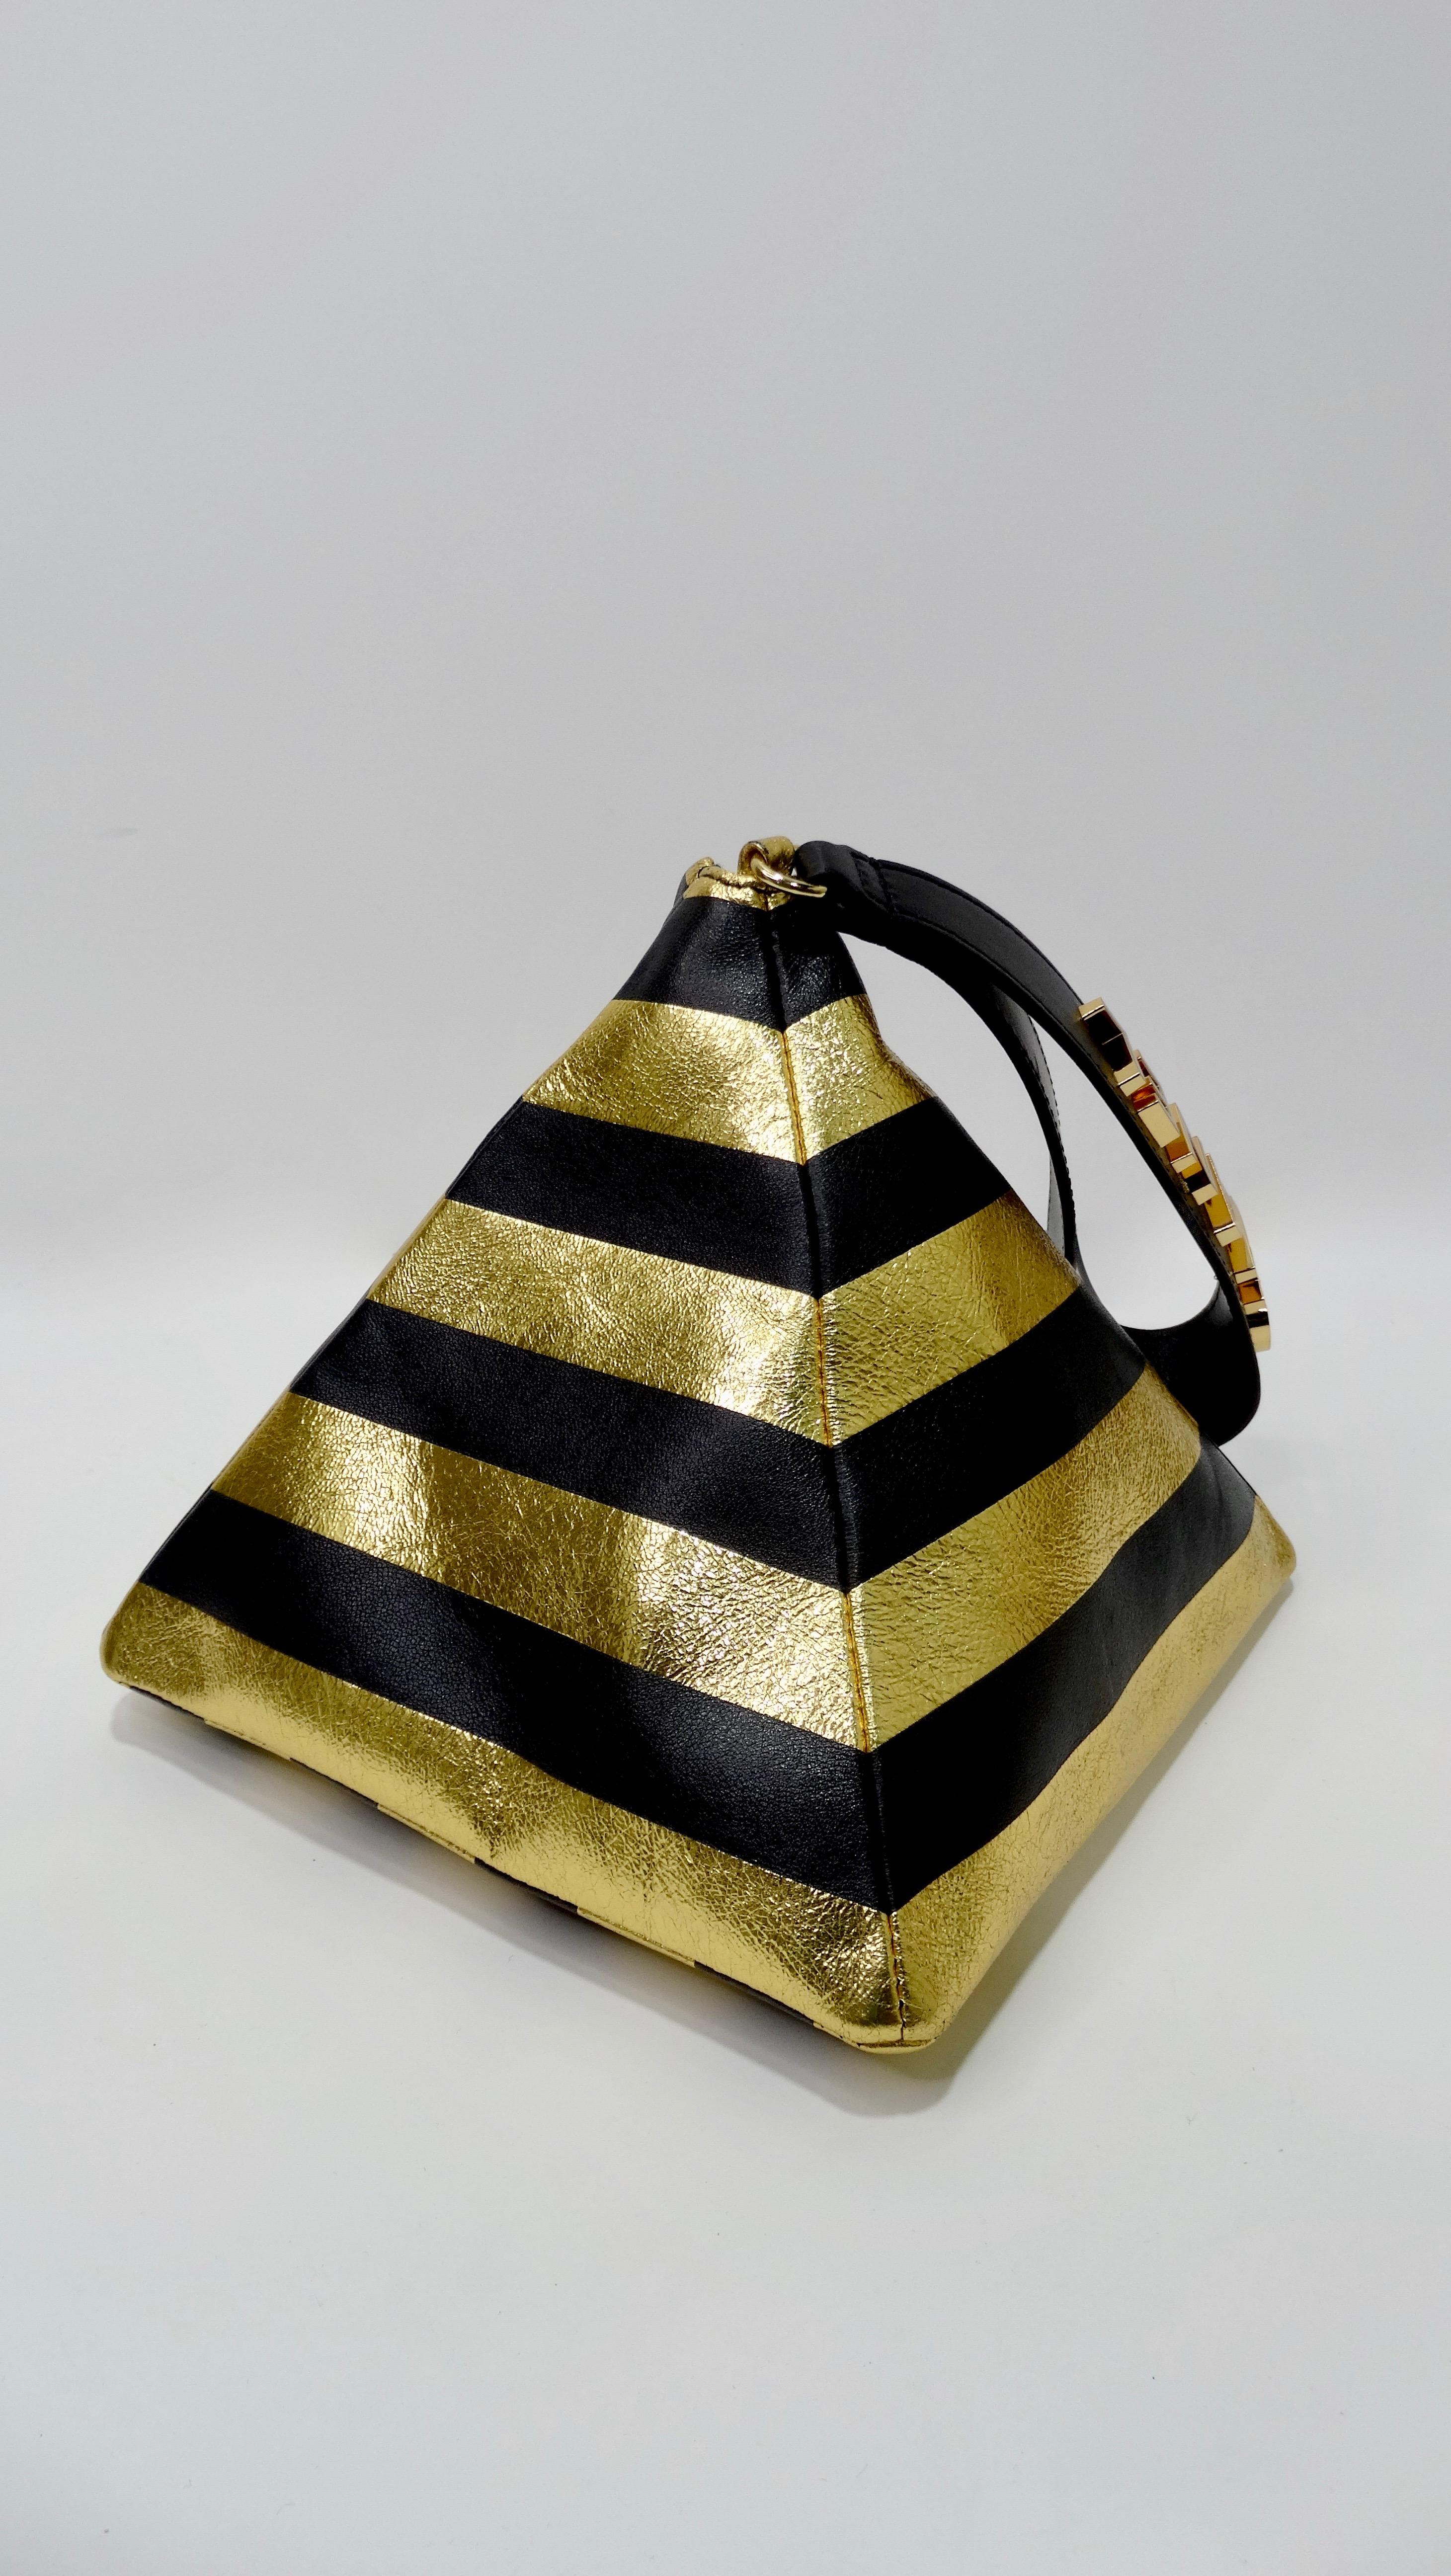 Chanel 2019 Pre-Fall Kheops Pyramid Handbag 3